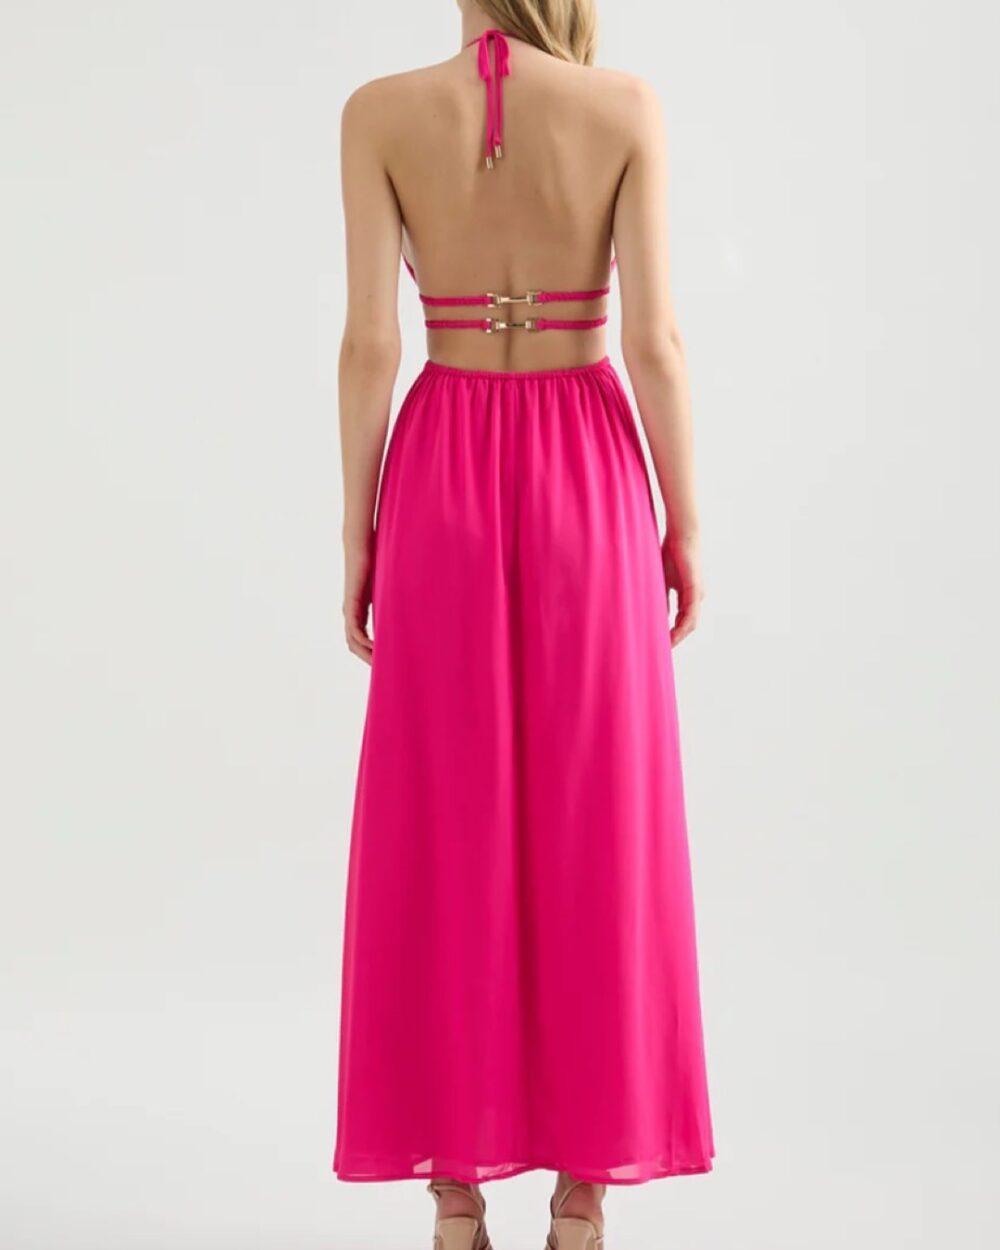 The-Palais-Dress-pink-Onrotate